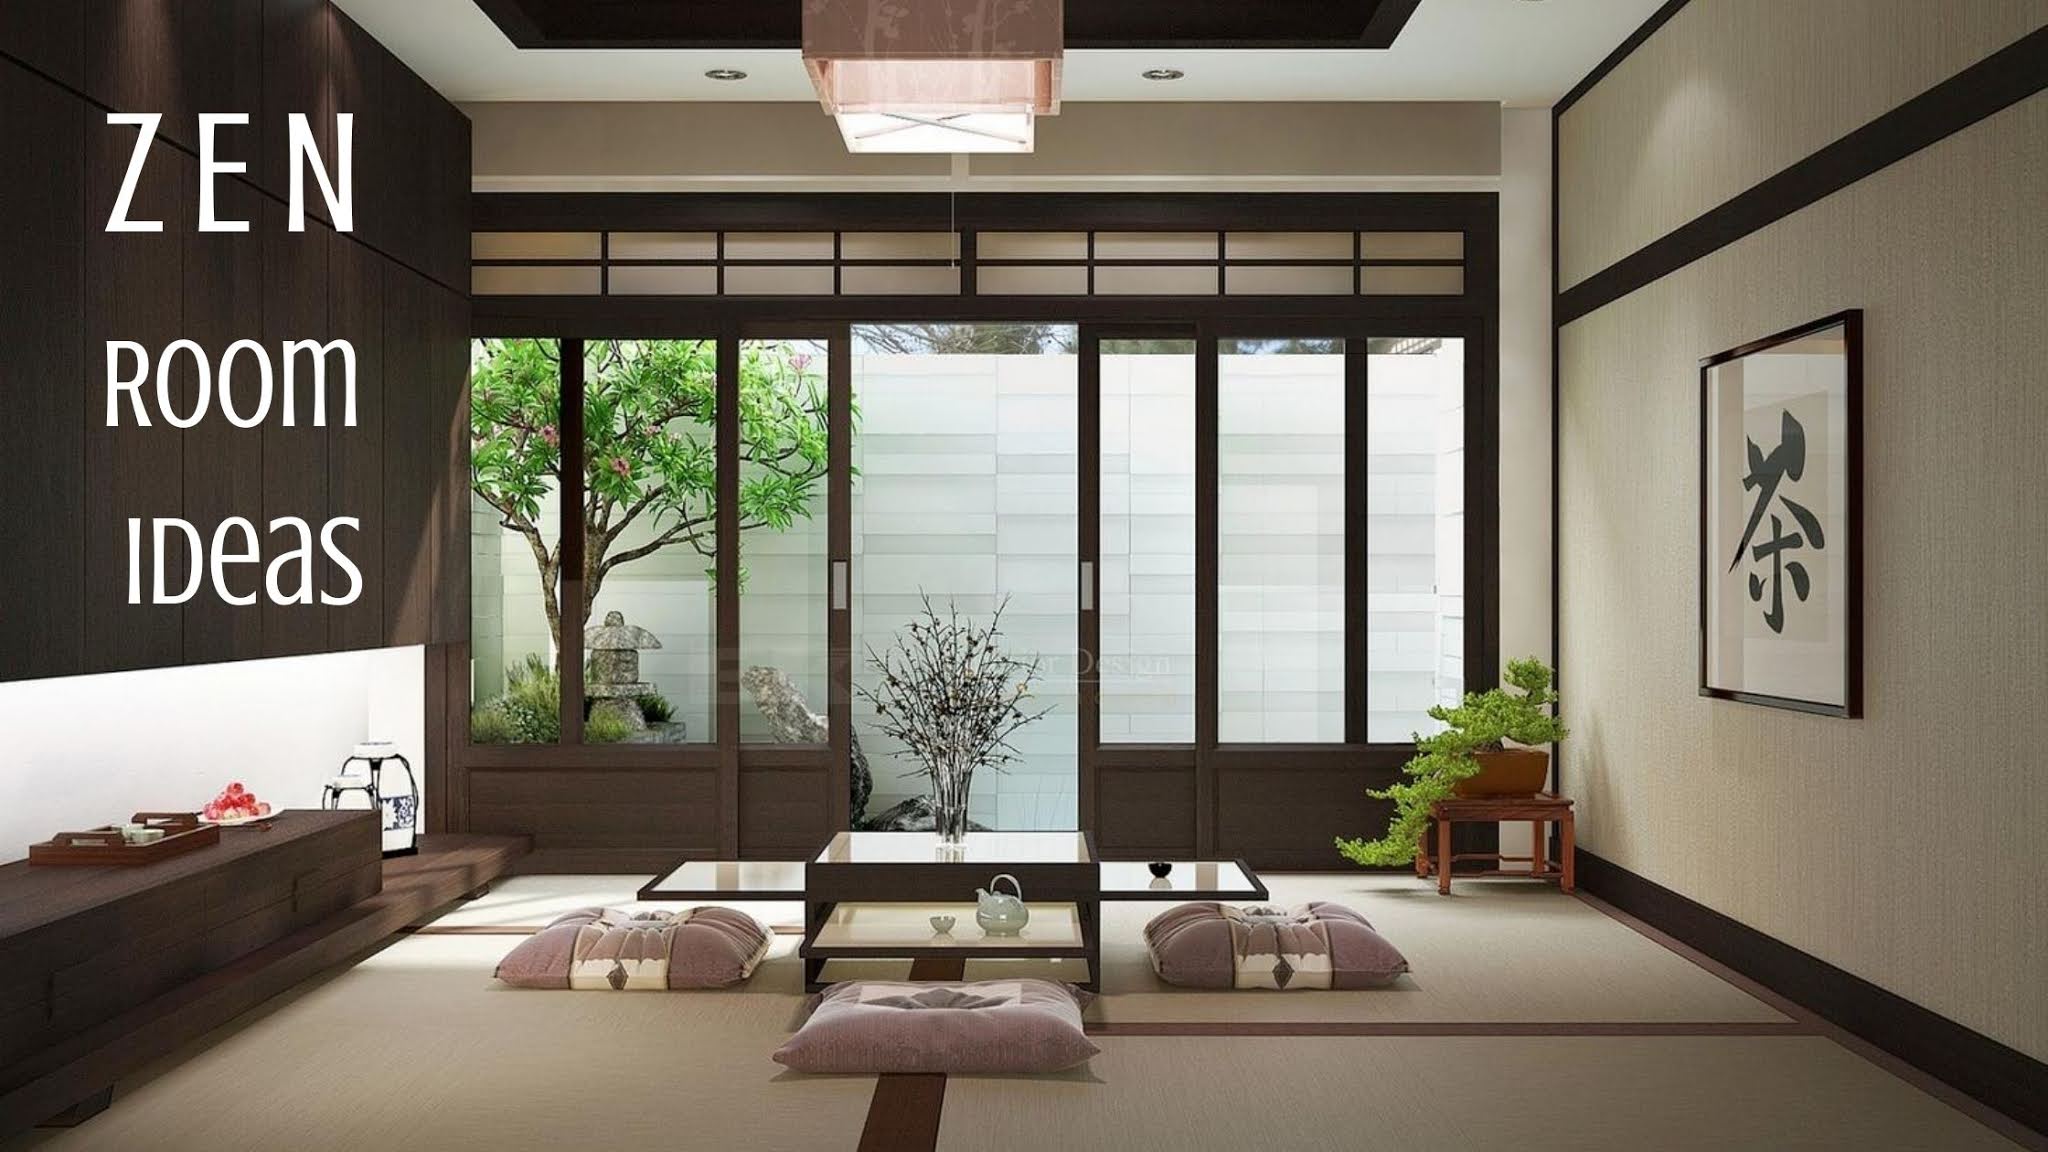 Zen Room Ideas